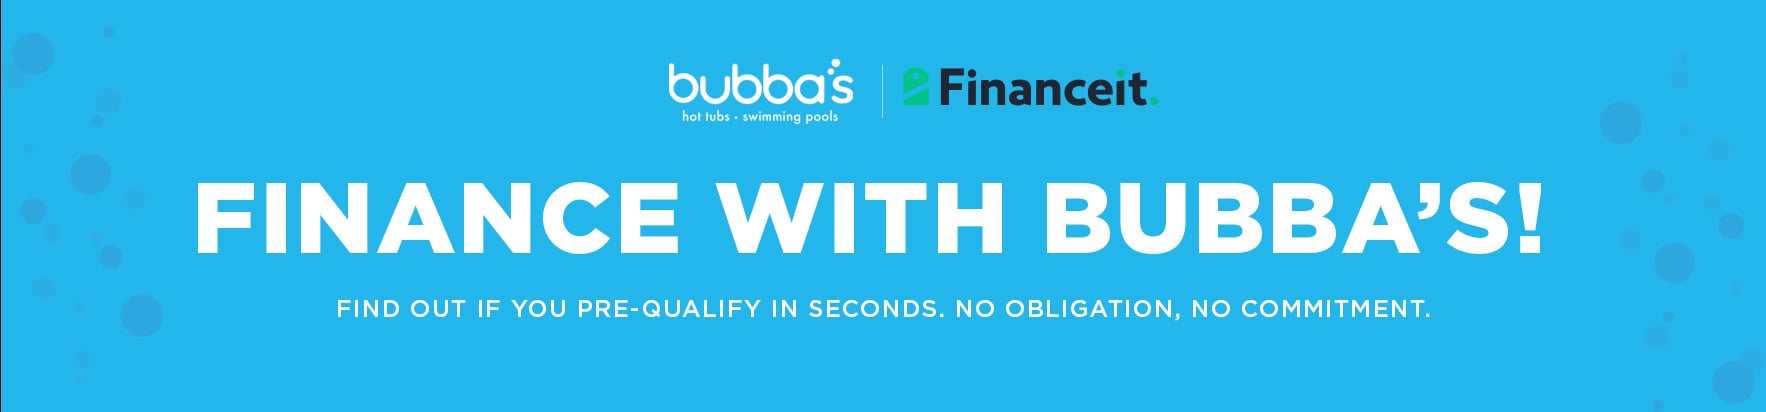 20230223-Bubbas- FINANCE IT (Hubspot Banner)